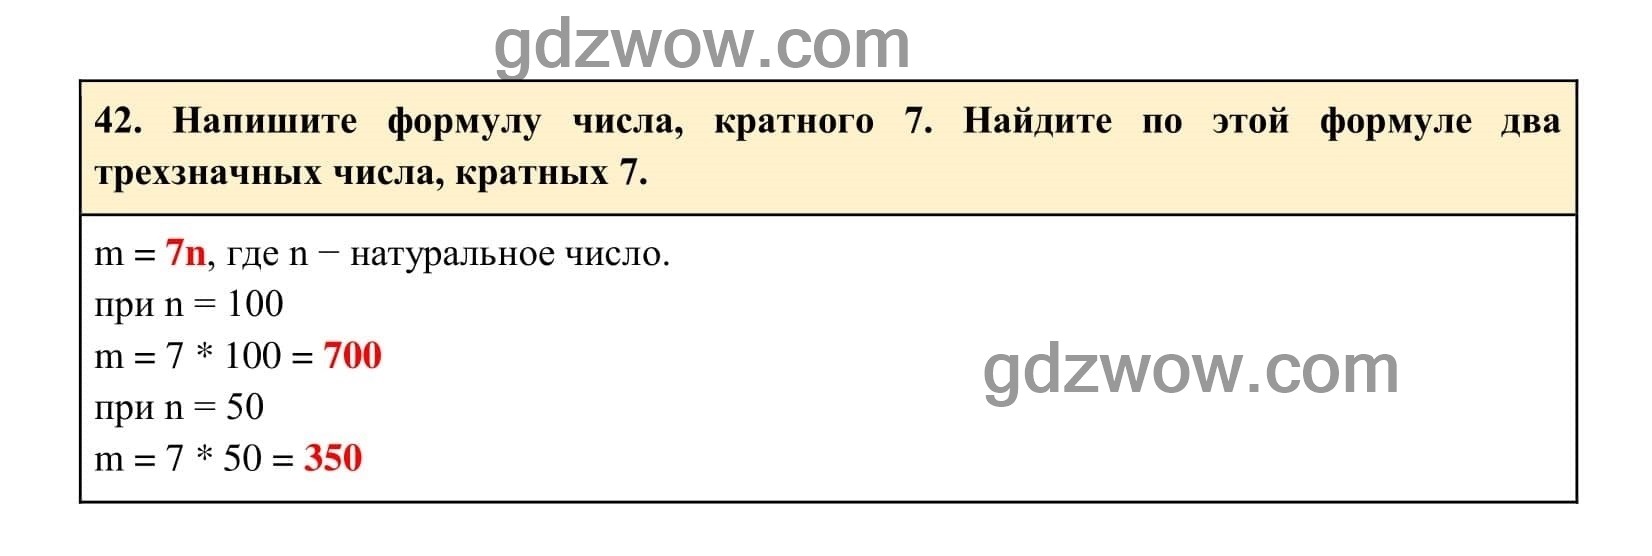 Упражнение 42 - ГДЗ по Алгебре 7 класс Учебник Макарычев (решебник) - GDZwow